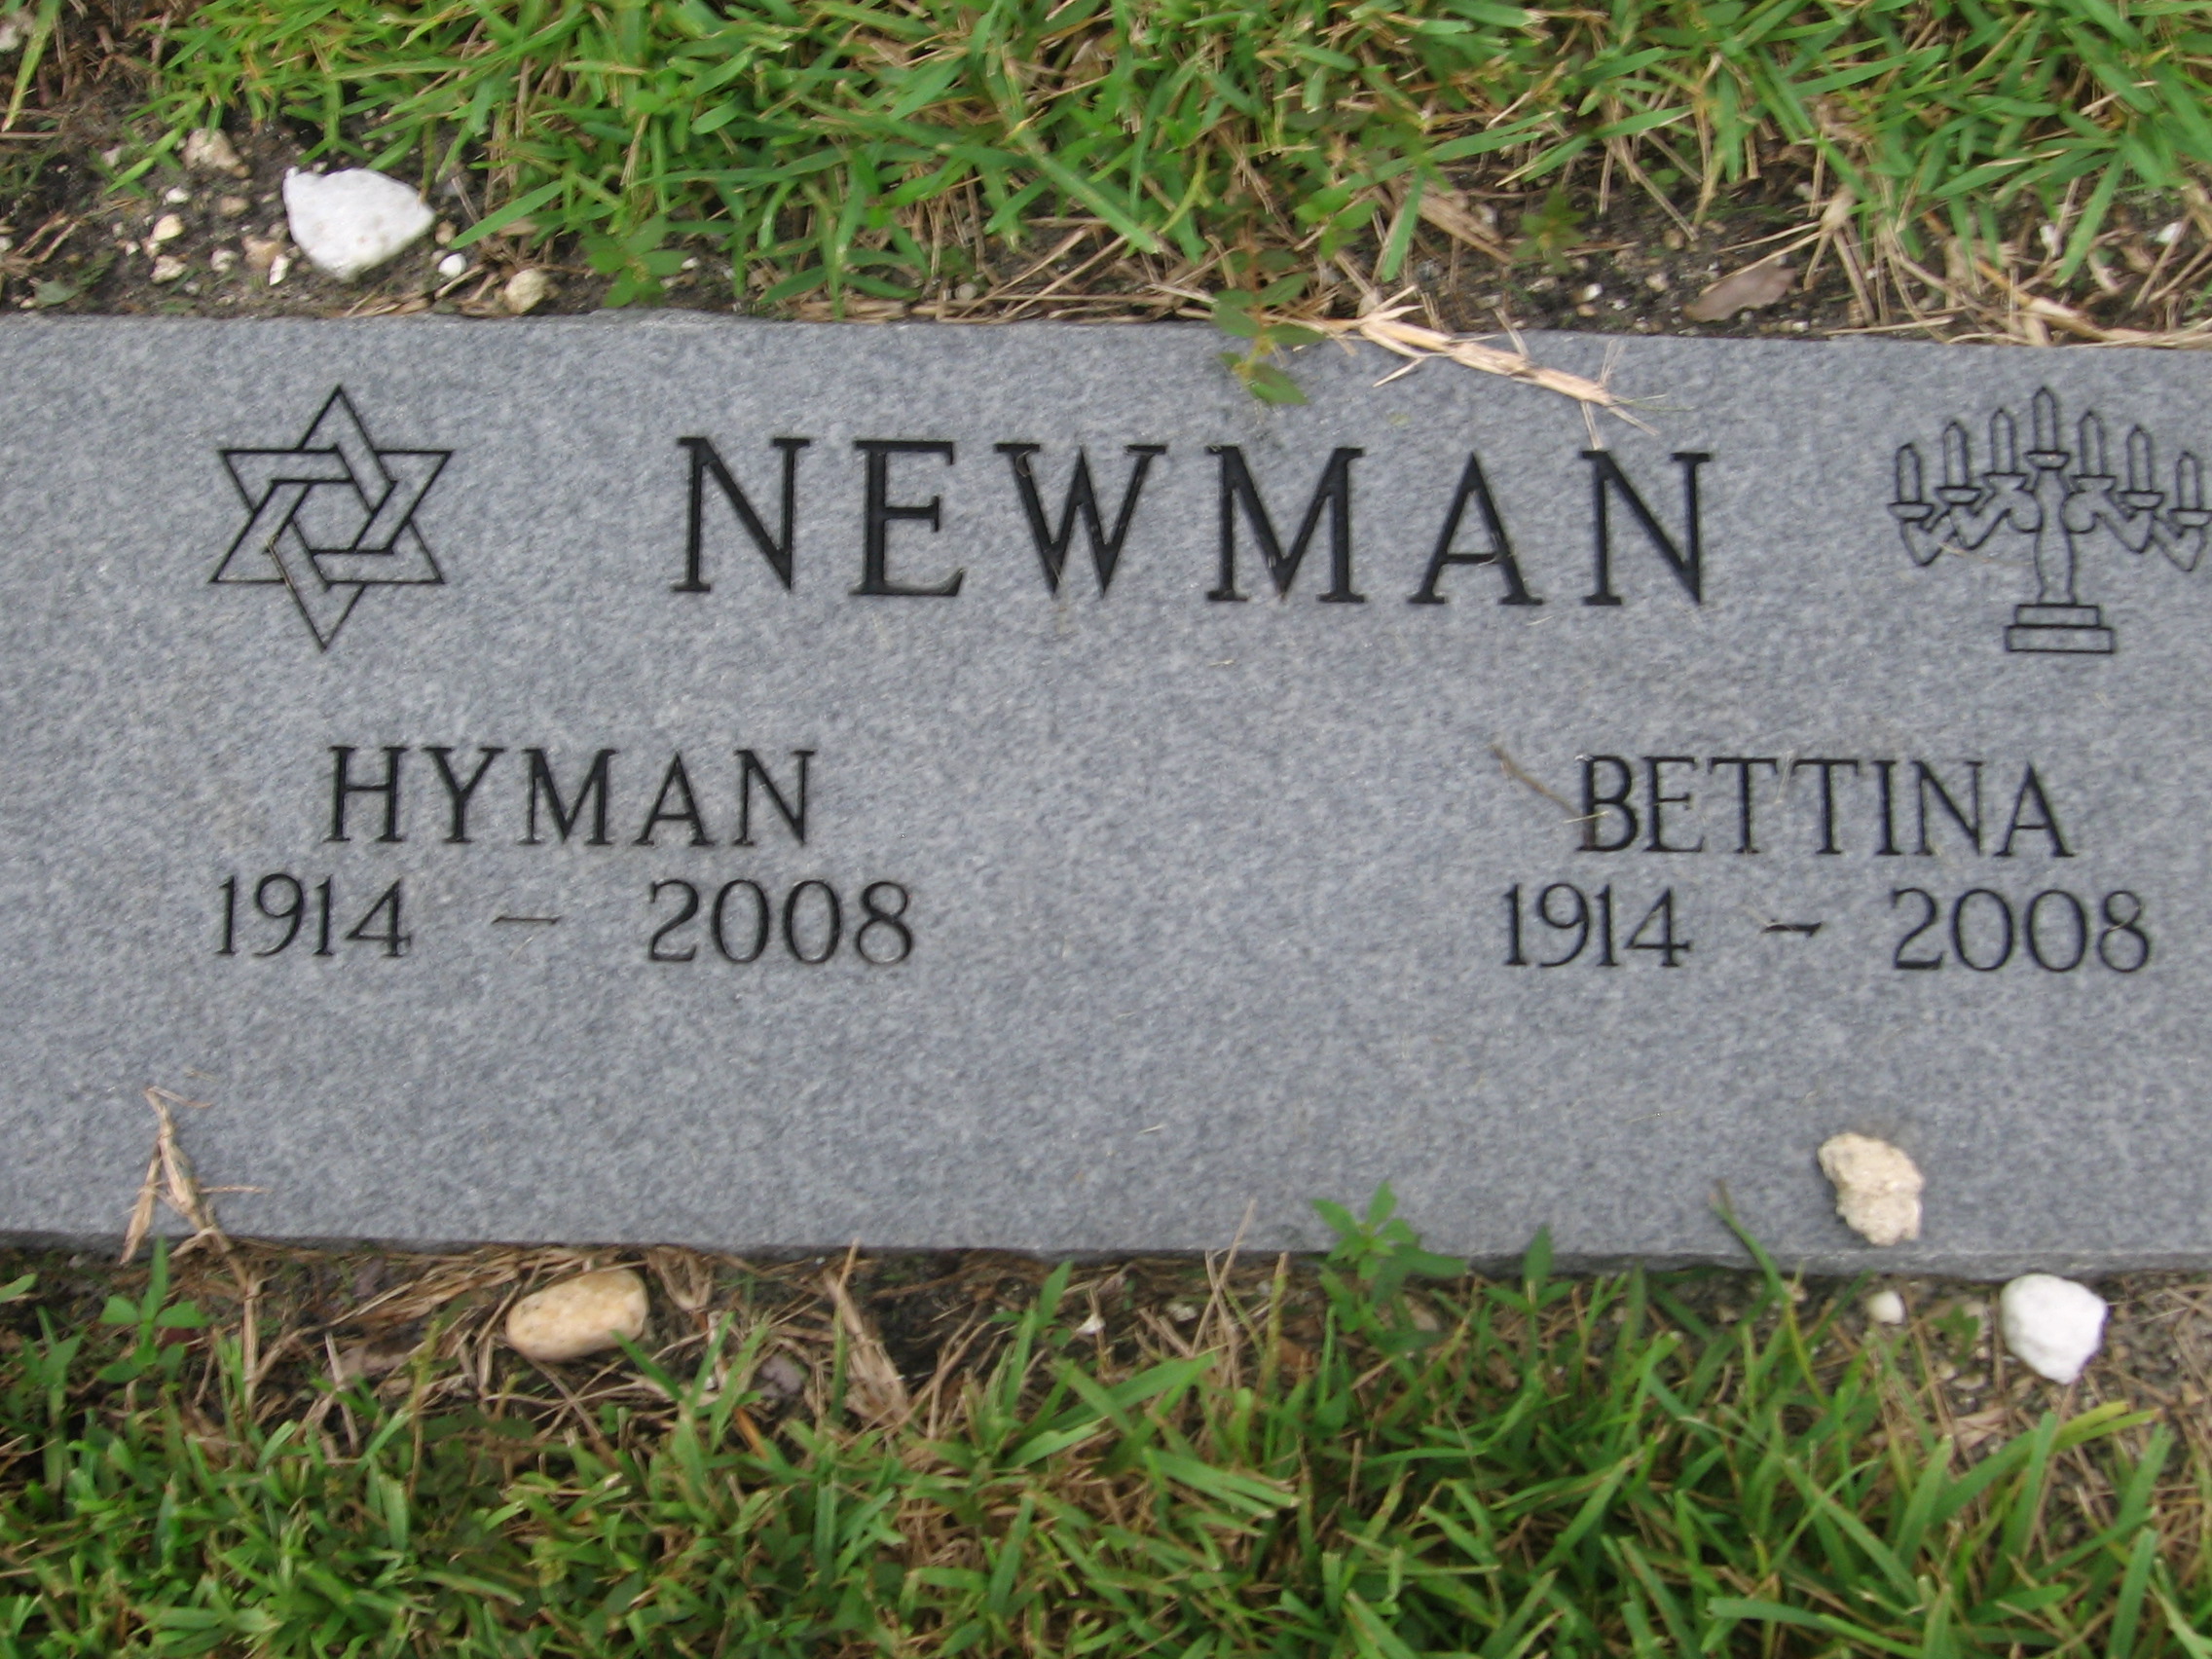 Hyman Newman